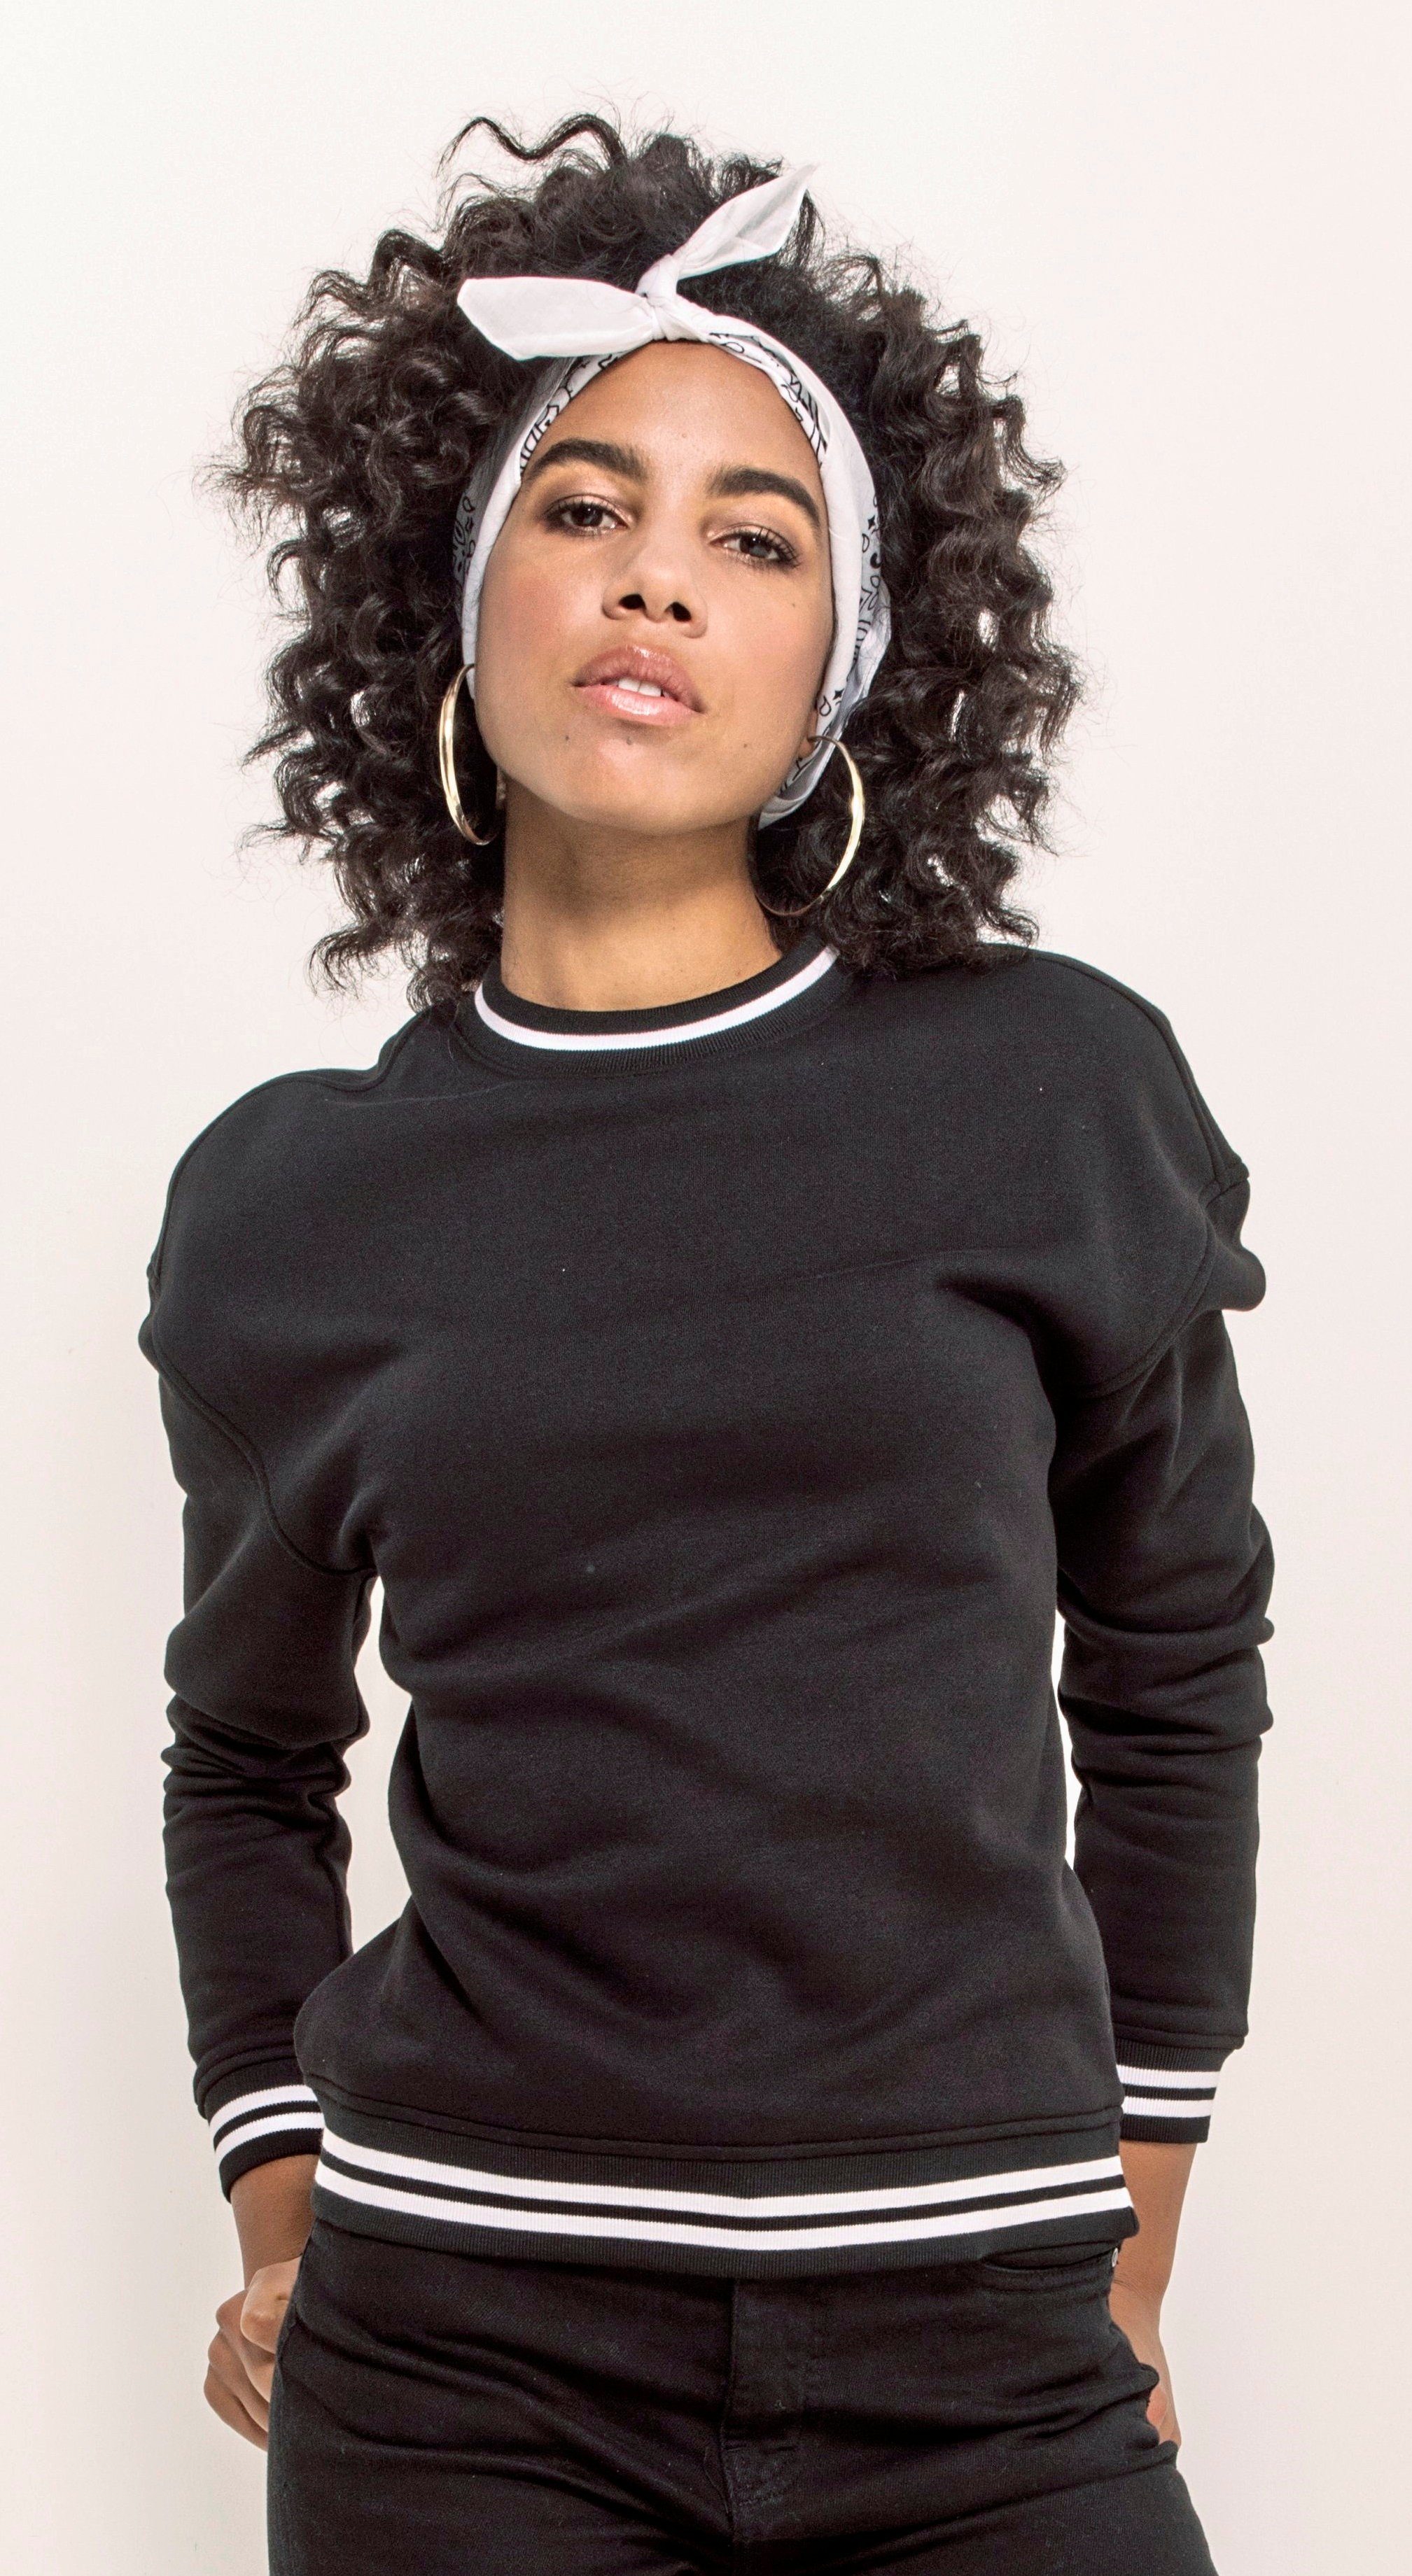 Sweater Damen in schwarz 5XL / Your Build Crewneck bis Sweatshirt XS Optik Brand Mädchen College